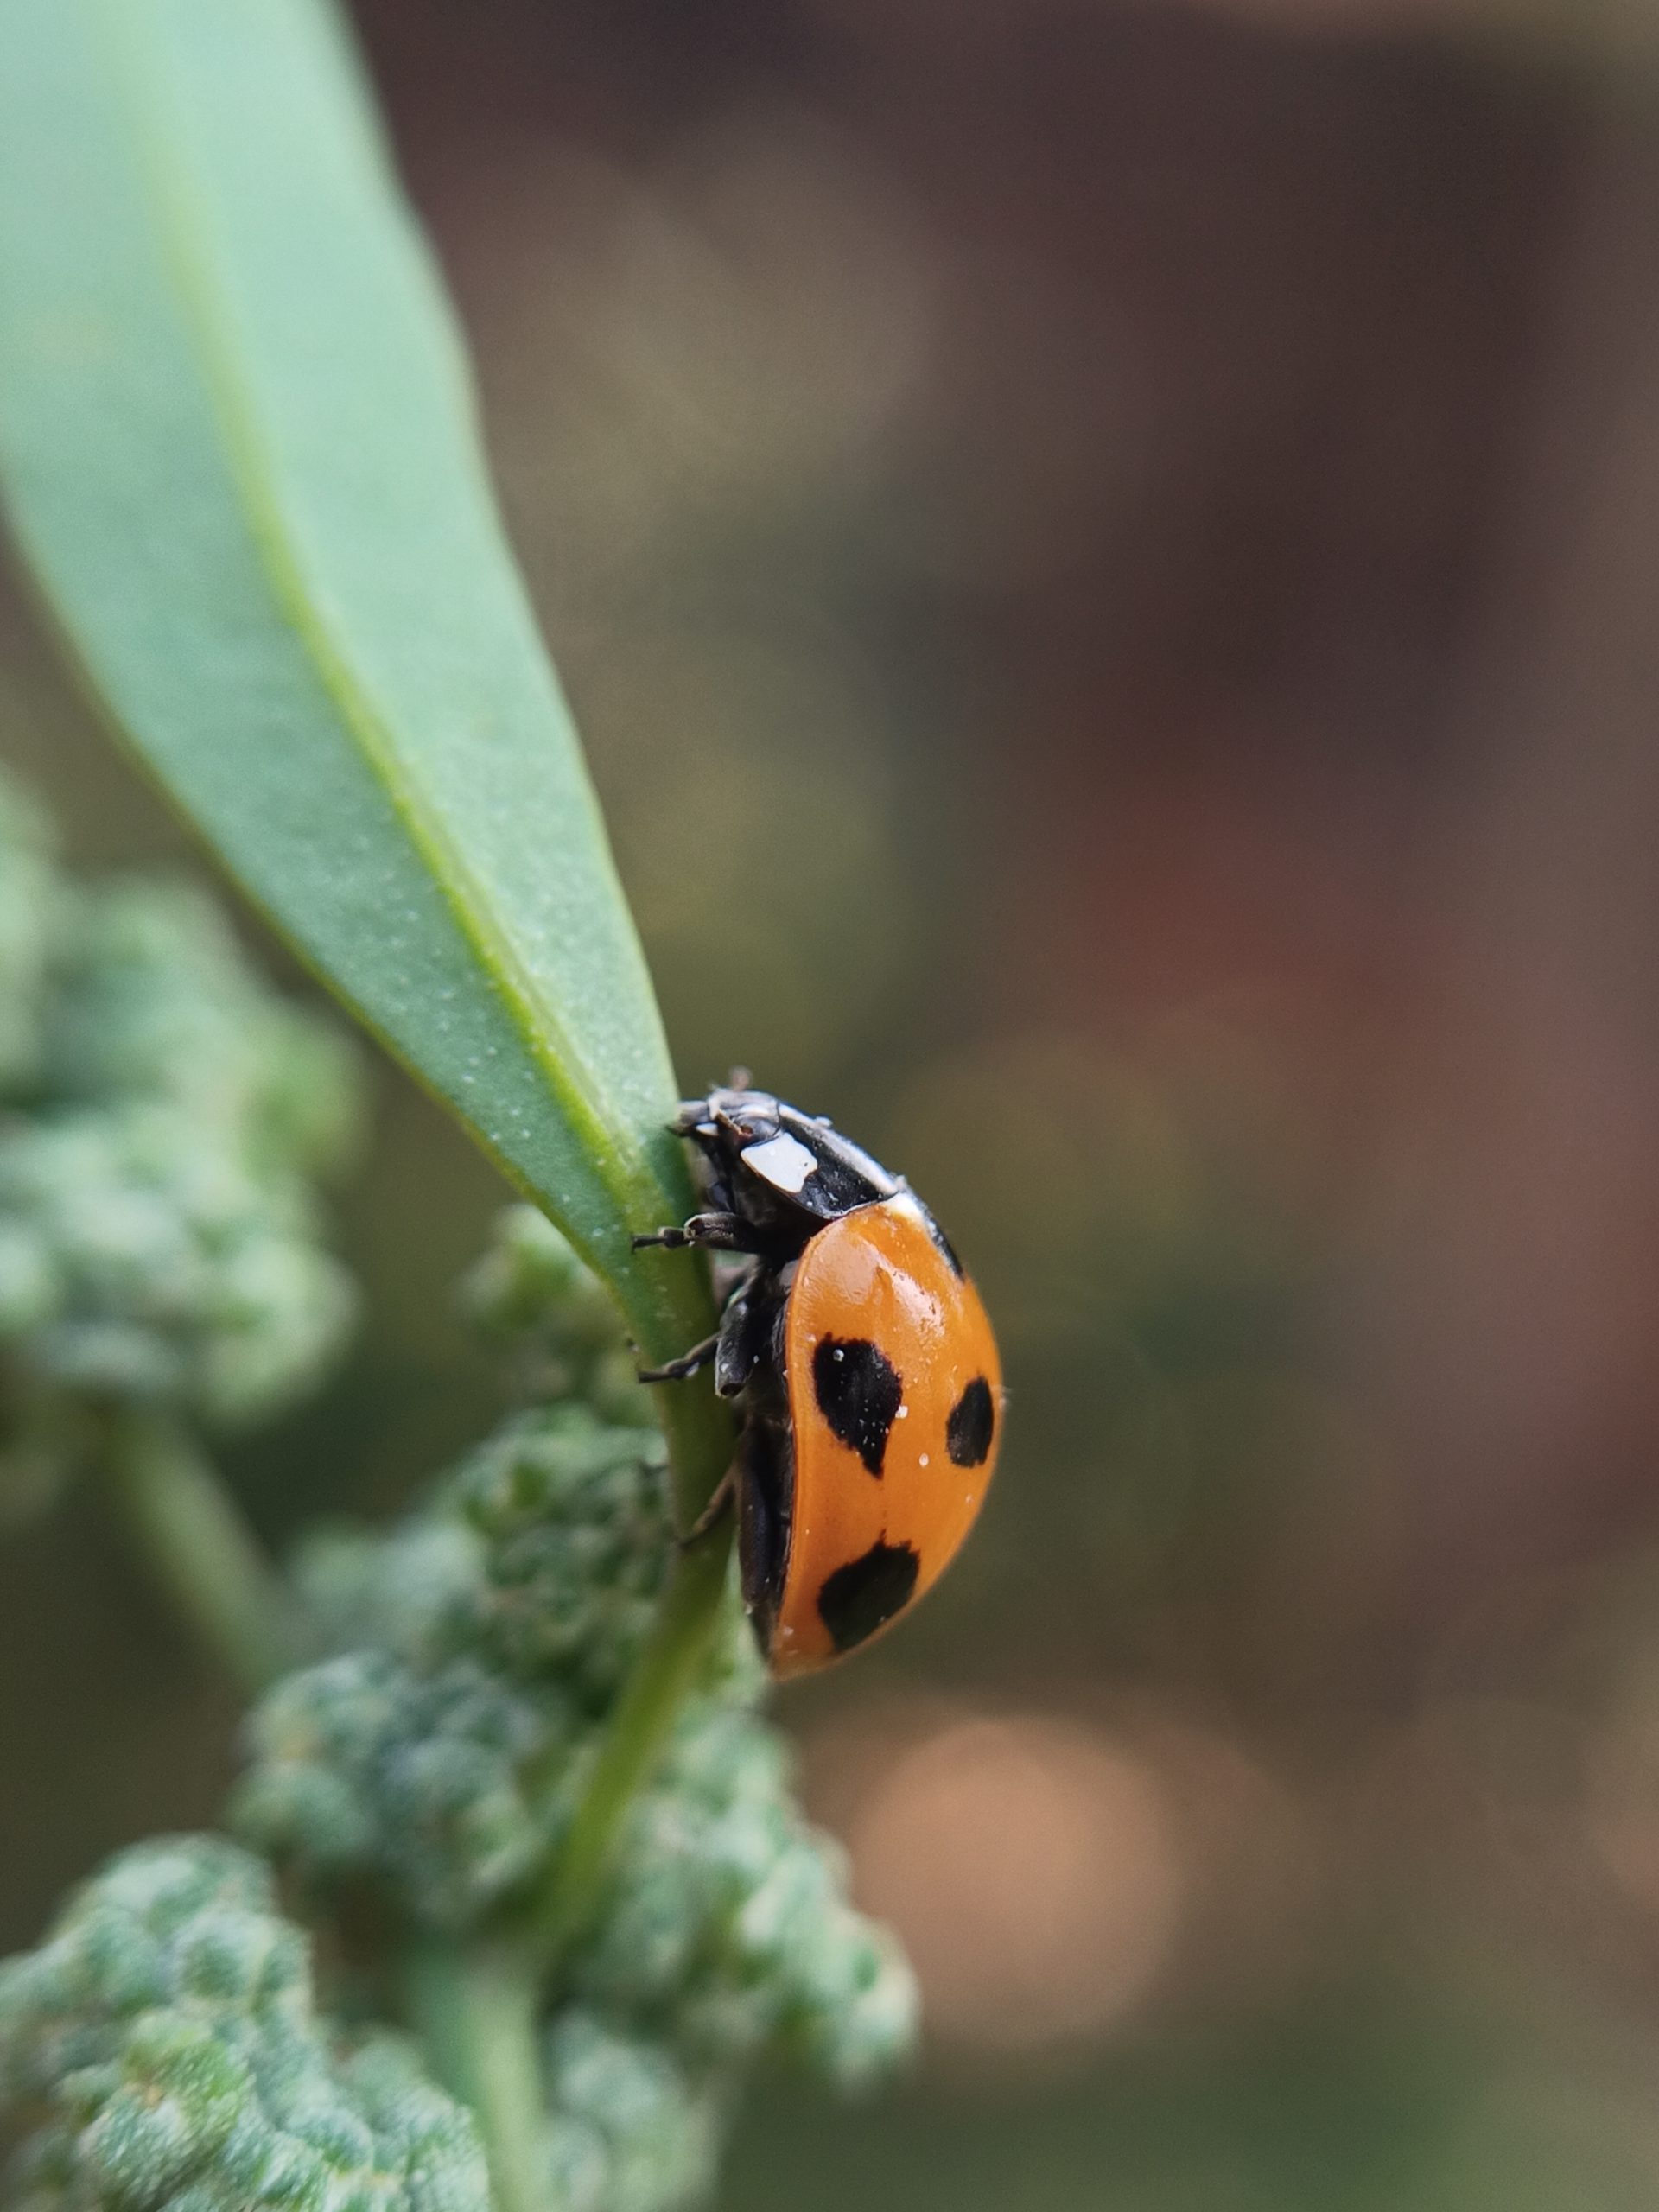 A ladybug on a plant